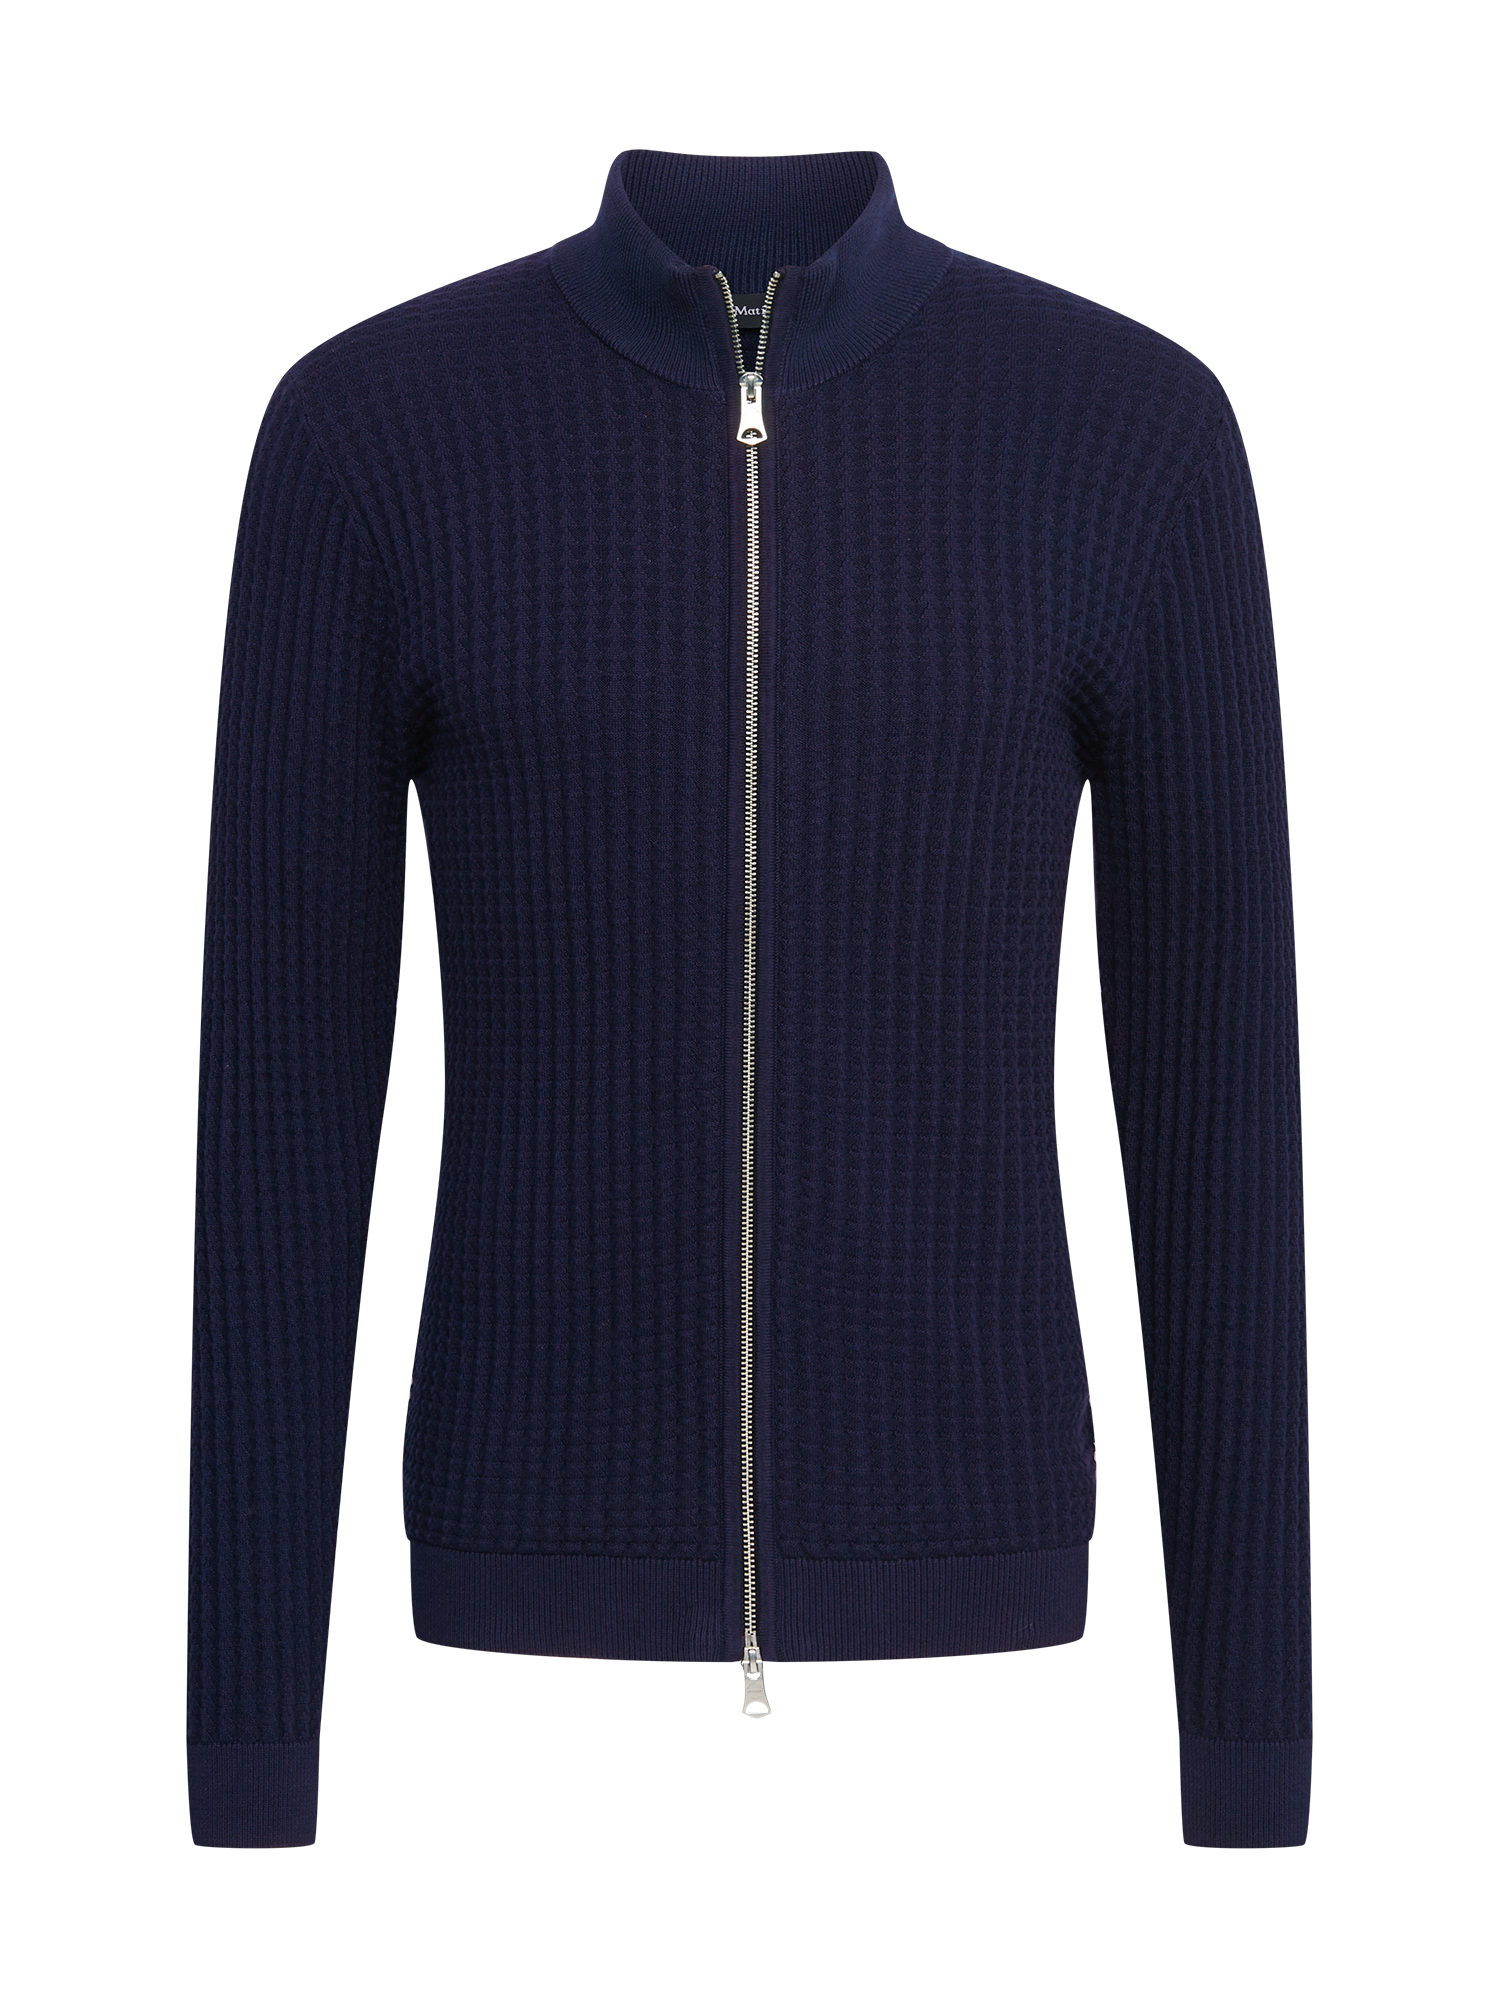 Bluzy Mężczyźni Matinique Bluza rozpinana Acardo w kolorze Granatowym 